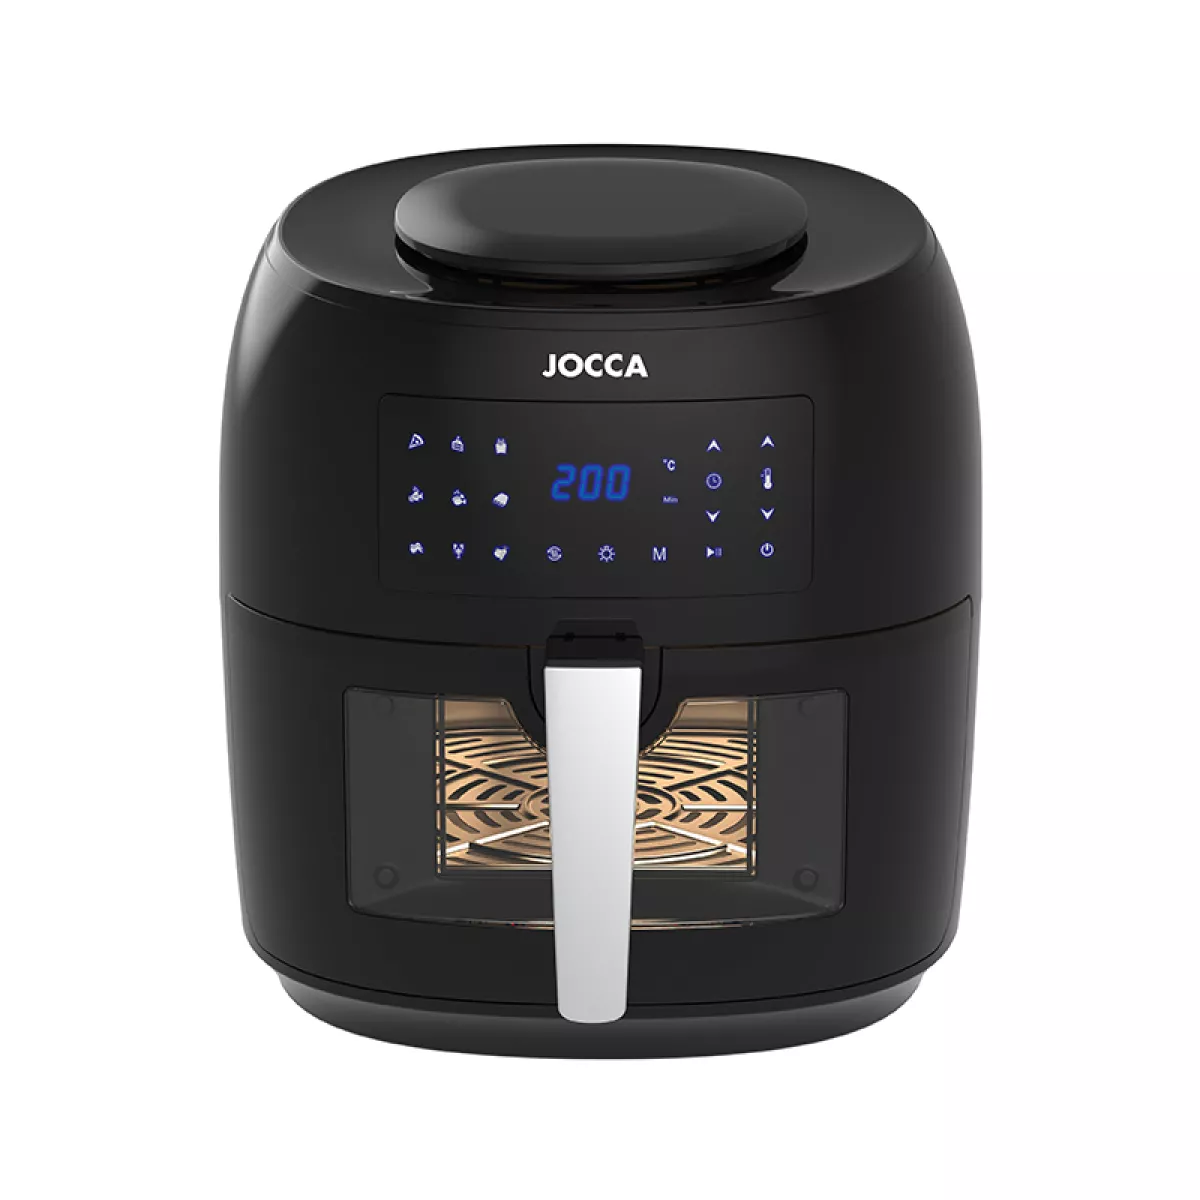 #1 - Jocca digital airfryer sort 7,4 liter 1800 watt